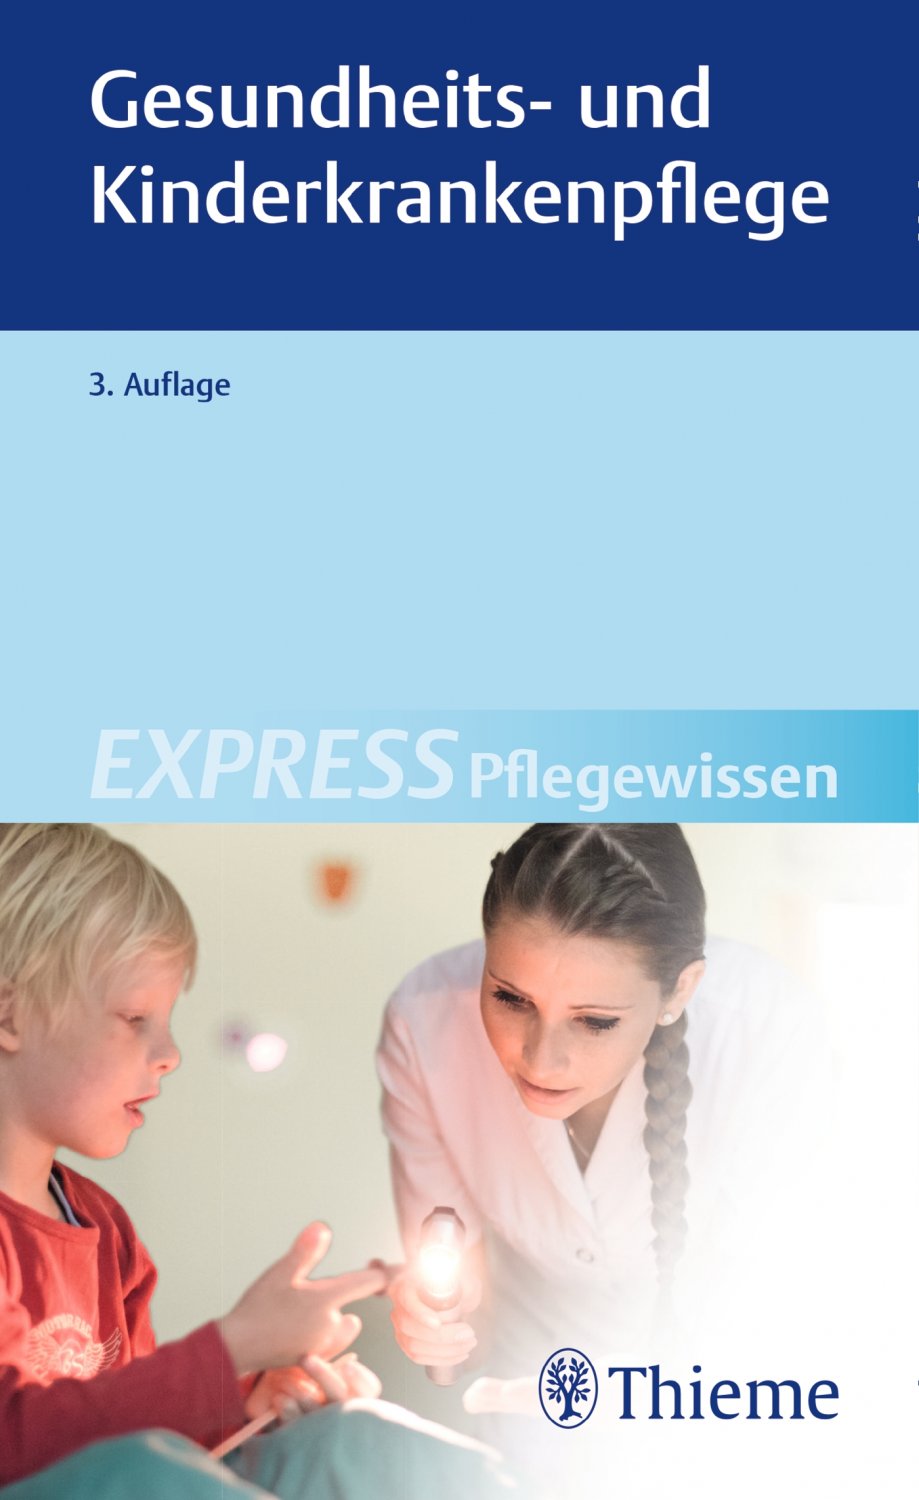 EXPRESS Pflegewissen Gesundheits und Kinderkrankenpflege PDF